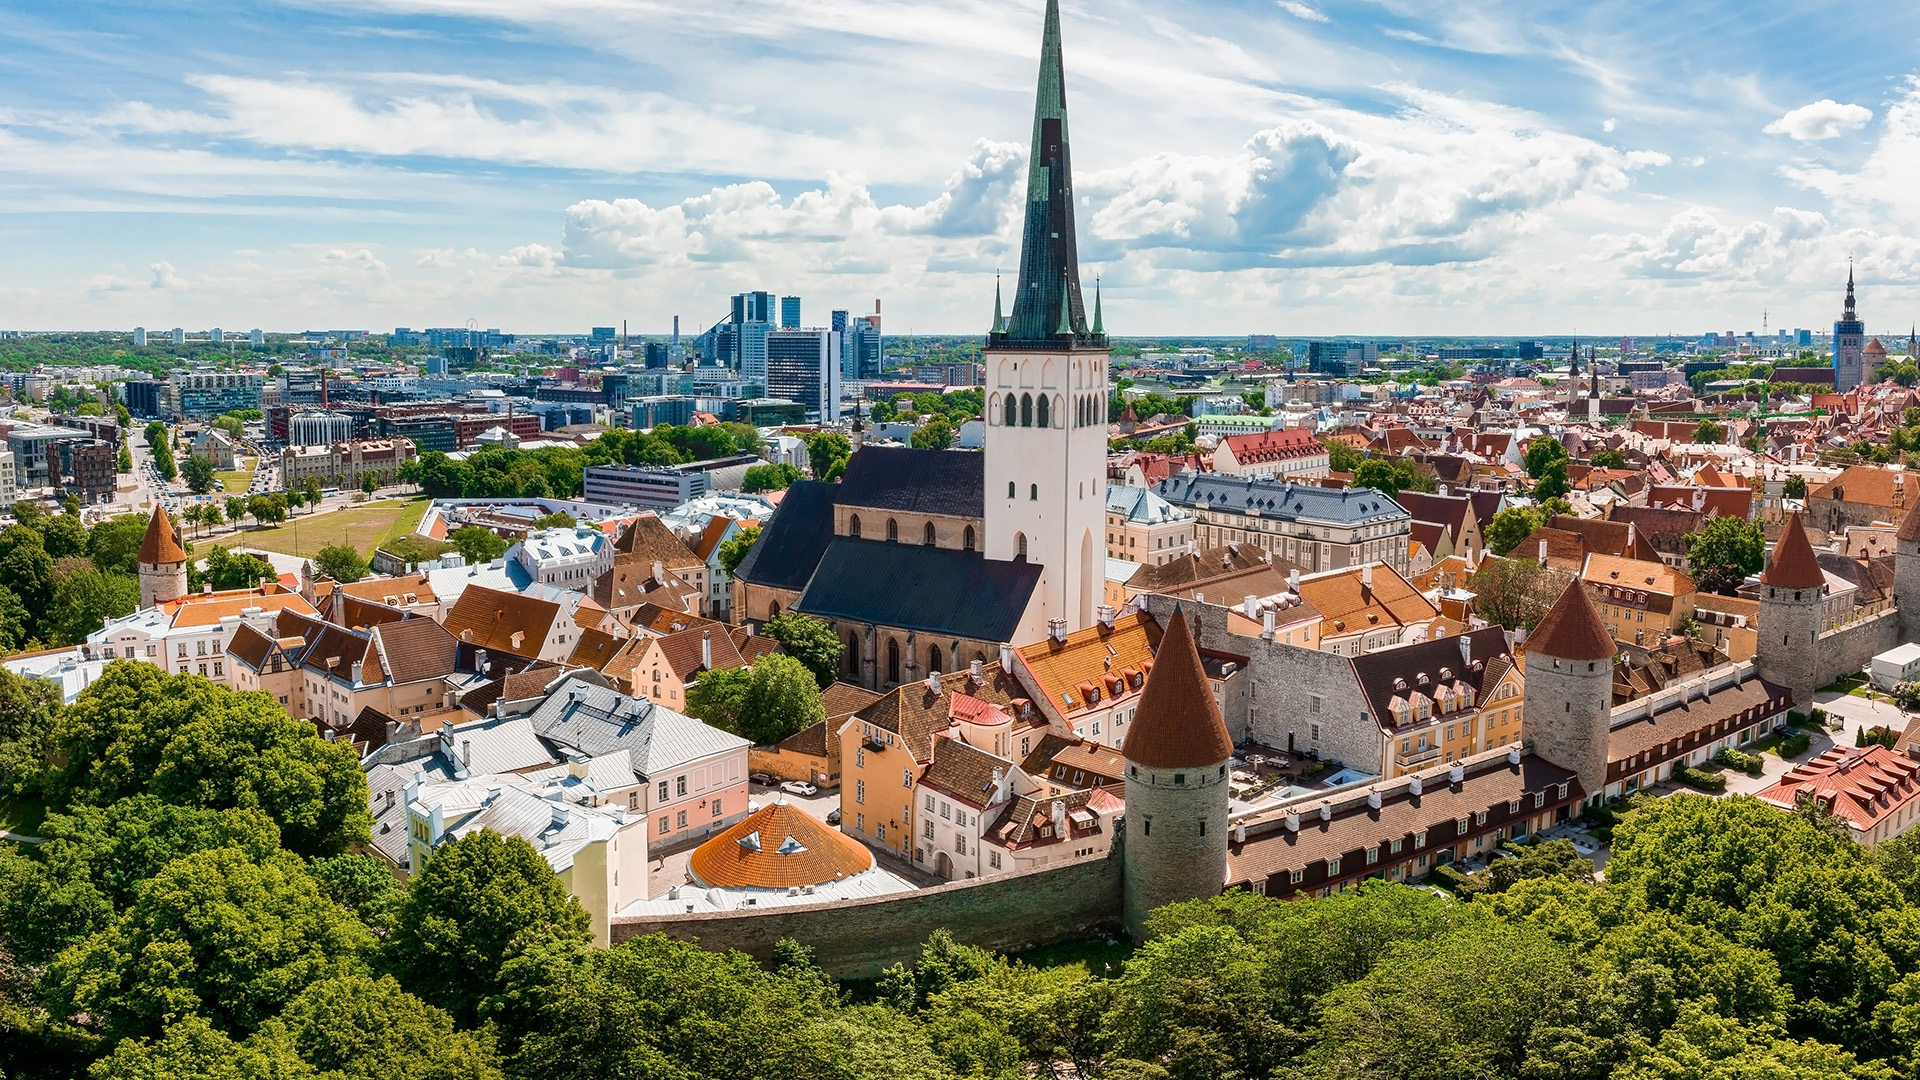 Photo of Tallinn old town, Estonia's capital